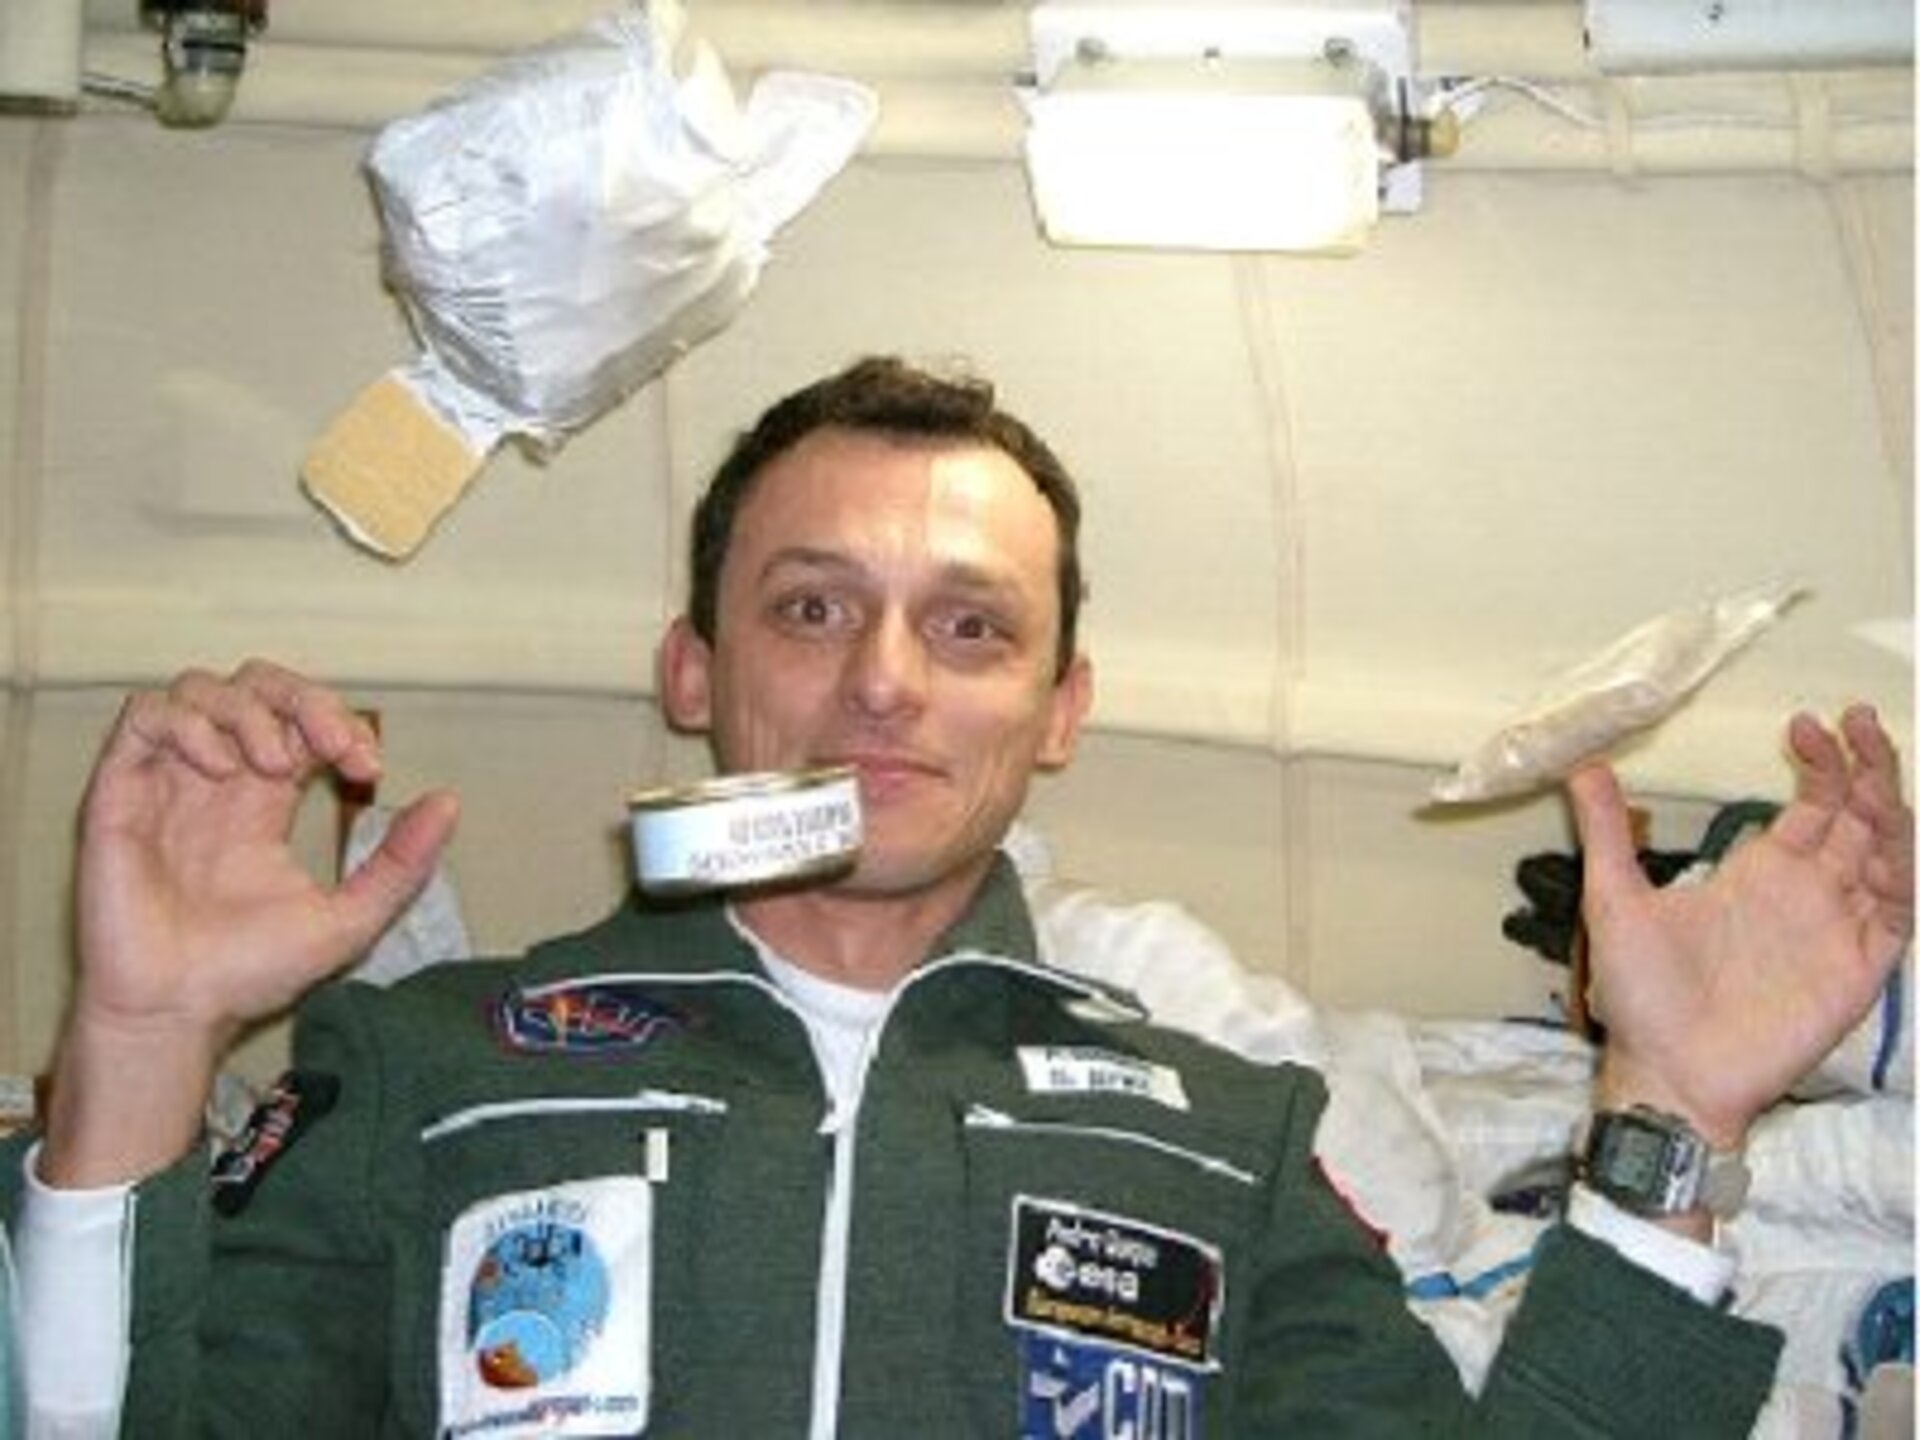 ESA astronaut Pedro Duque